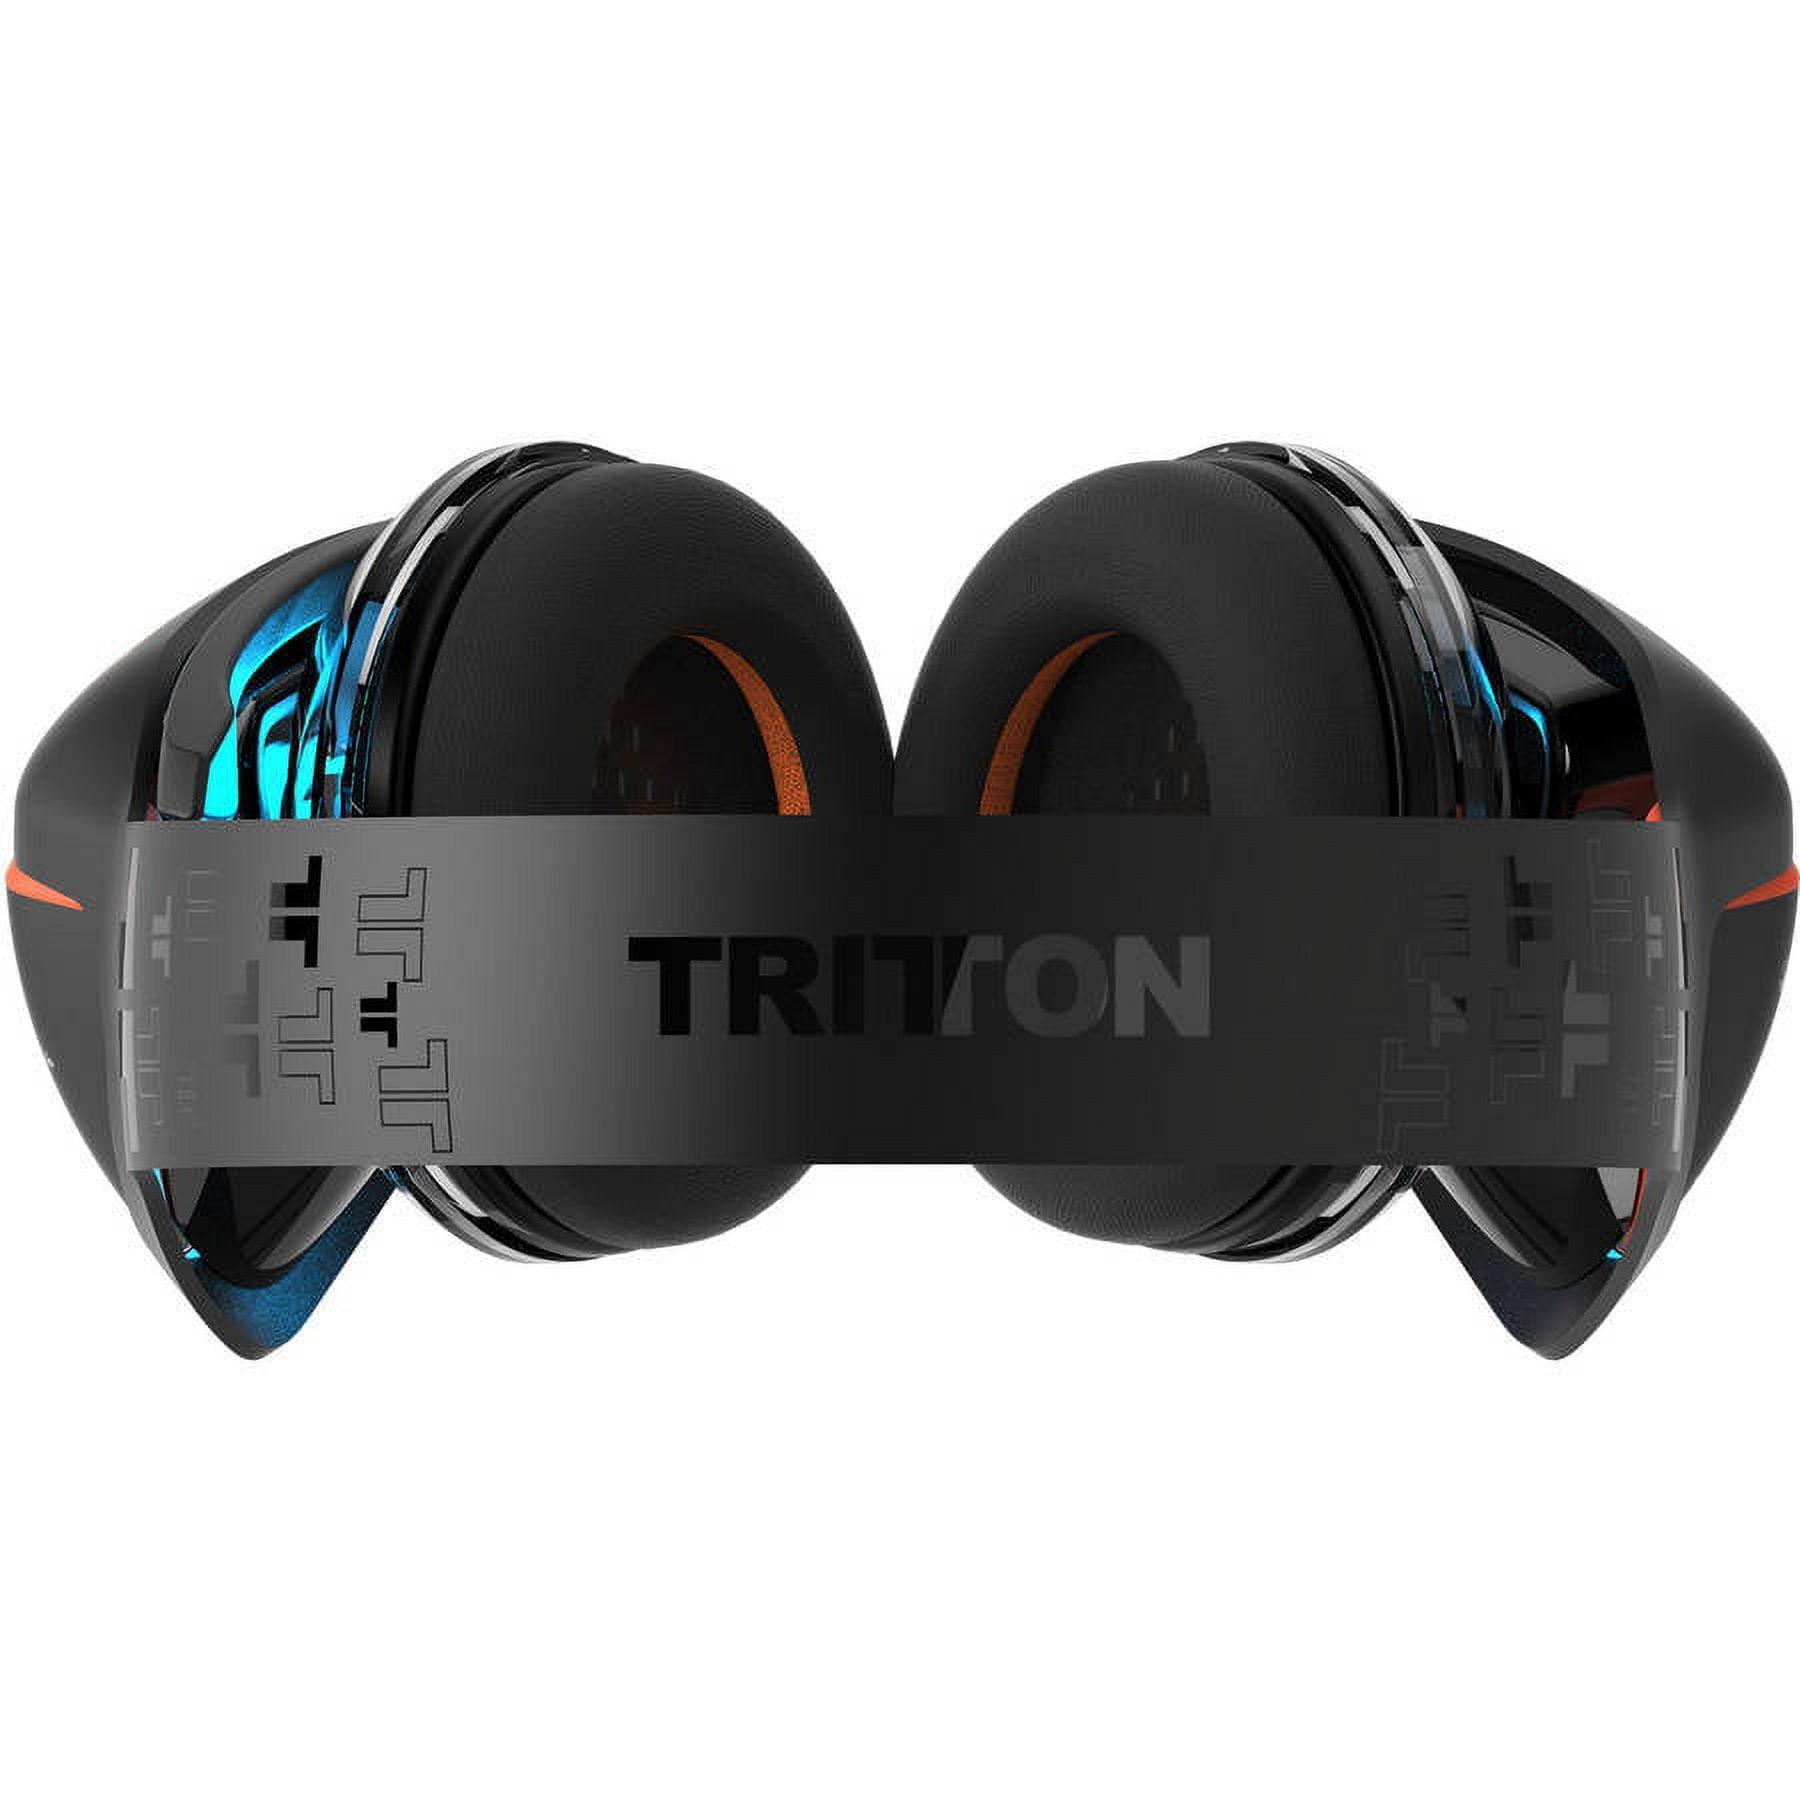 Tritton ARK 200 Wireless - Casque Gaming sans fil Noir - PS4 et PC